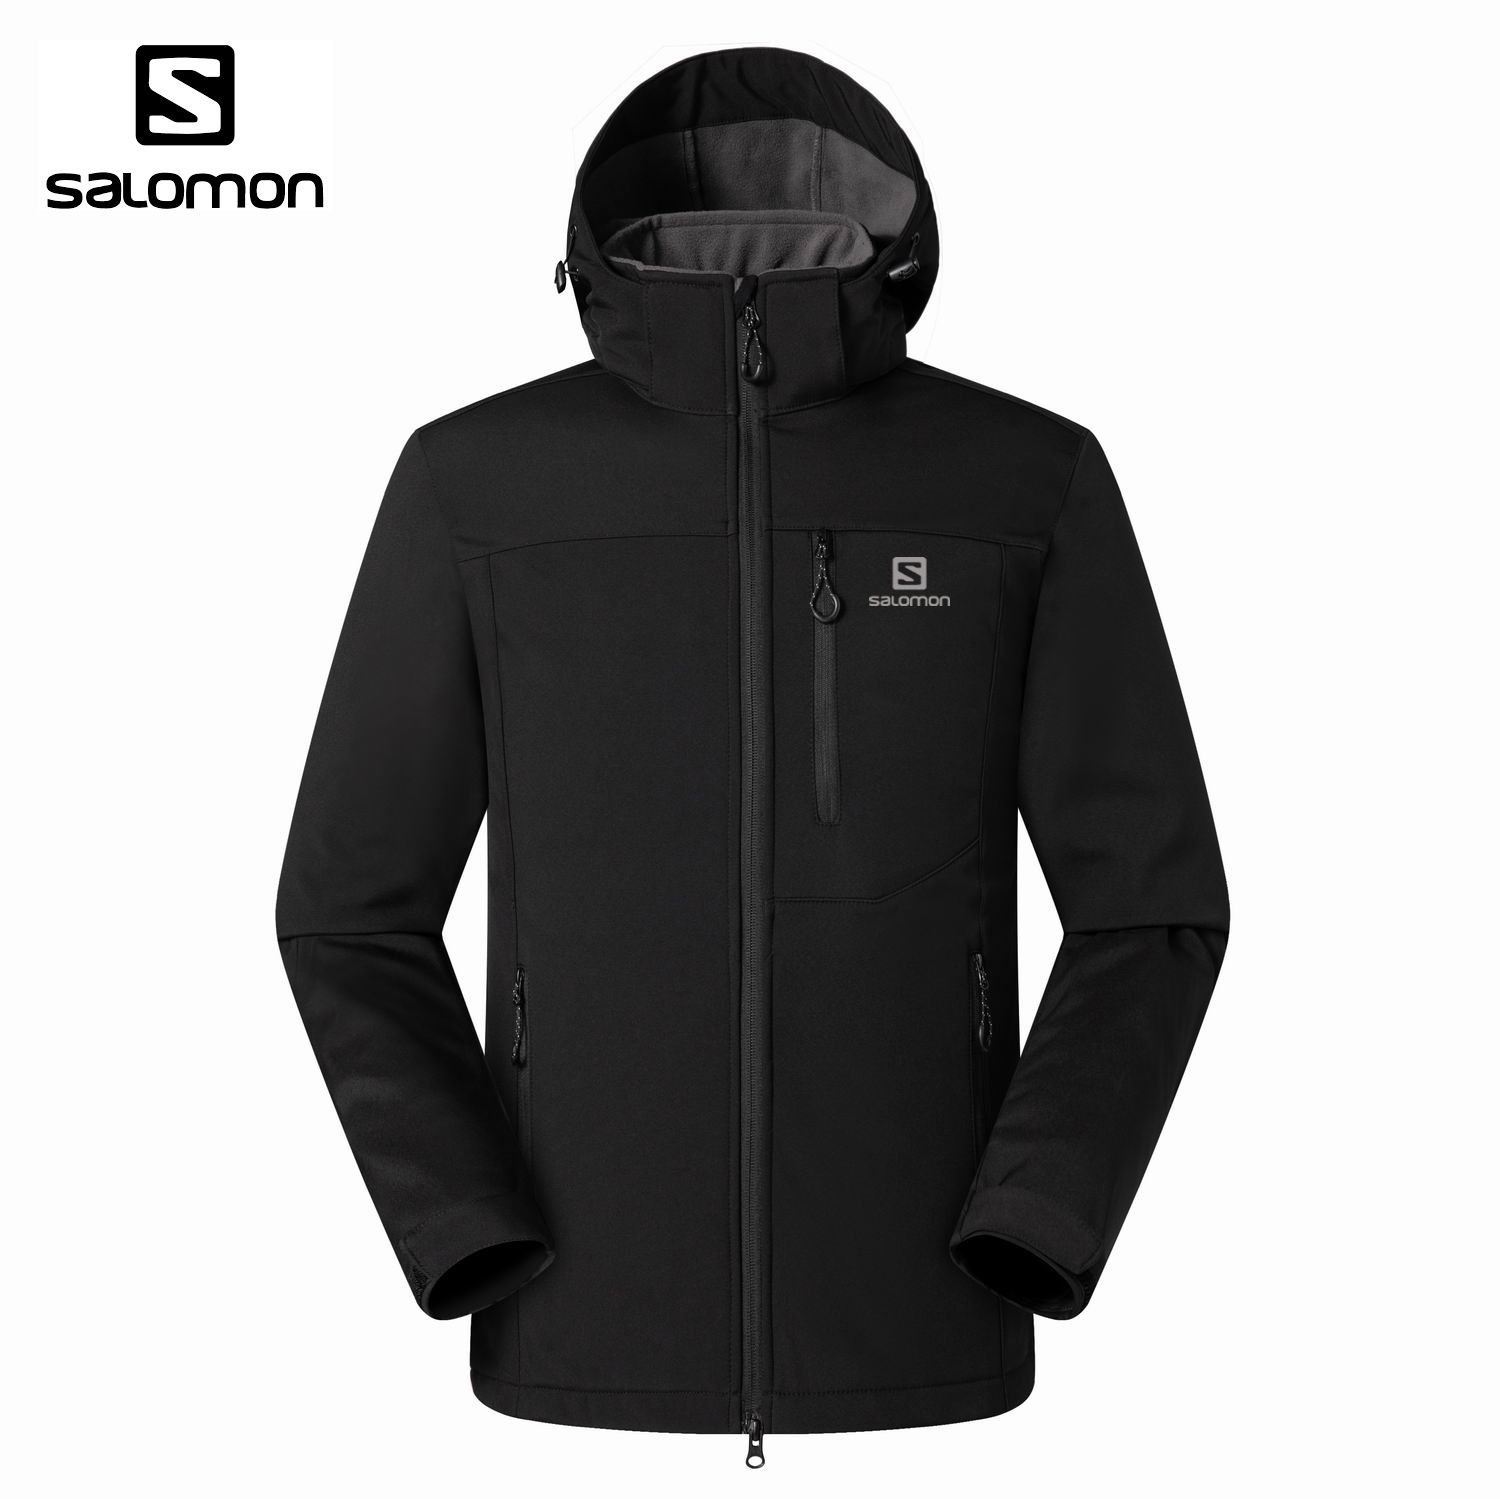 Salomon (Франция) - мембранная куртка с технологией Soft Shell